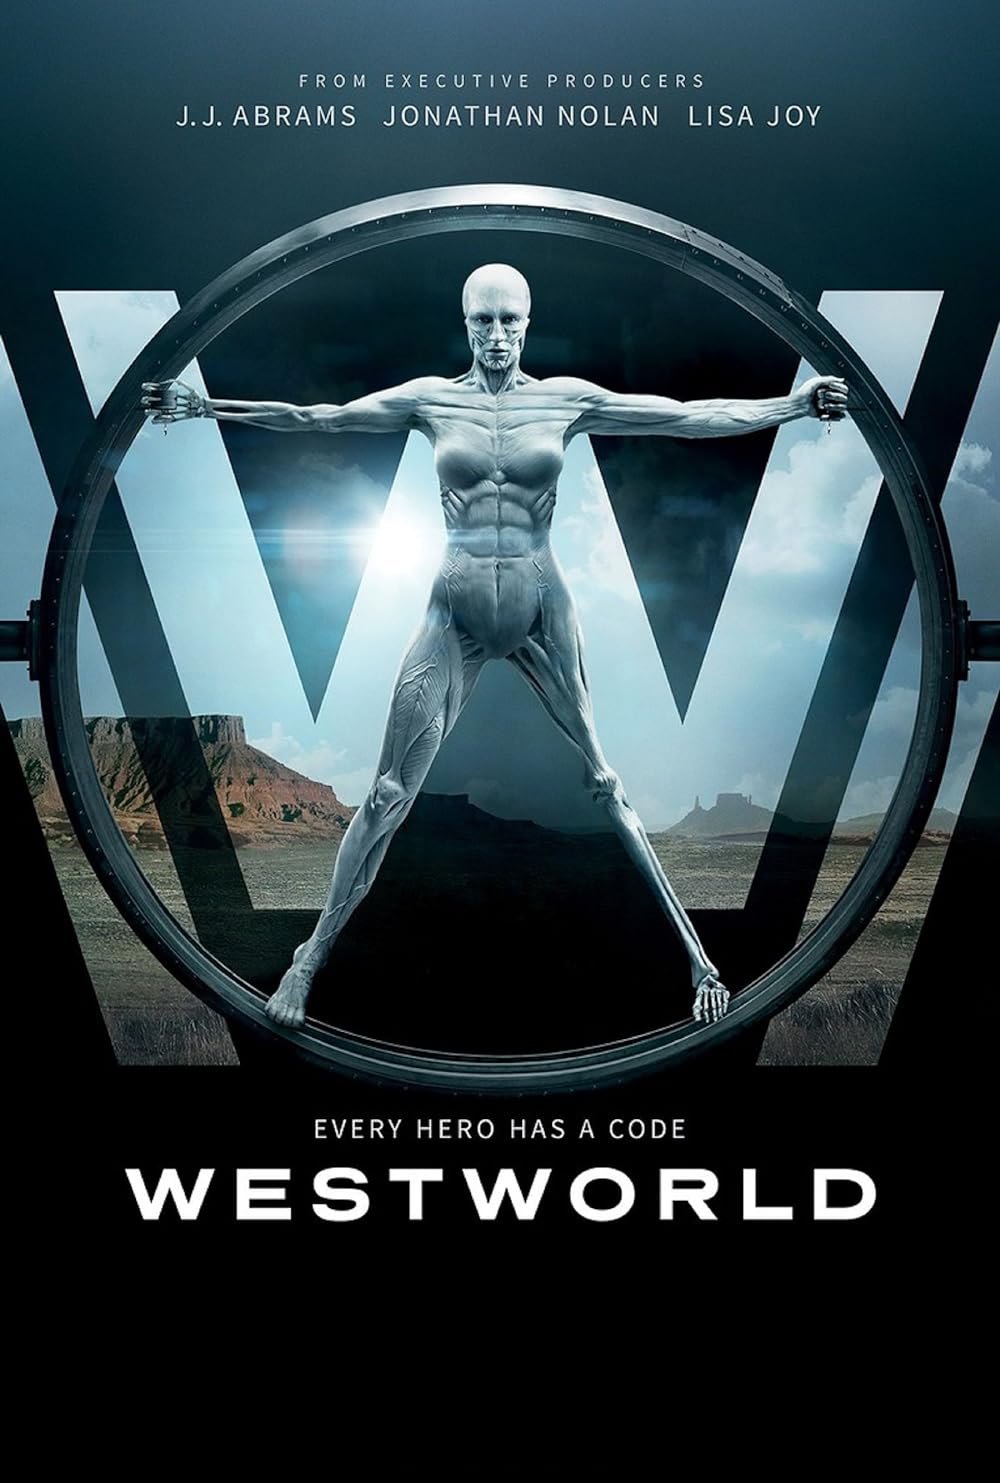 Westworld (2016) S01 EP01&EP10 192Kbps 23.976Fps 48Khz 2.0Ch DigitalTV Turkish Audio TAC